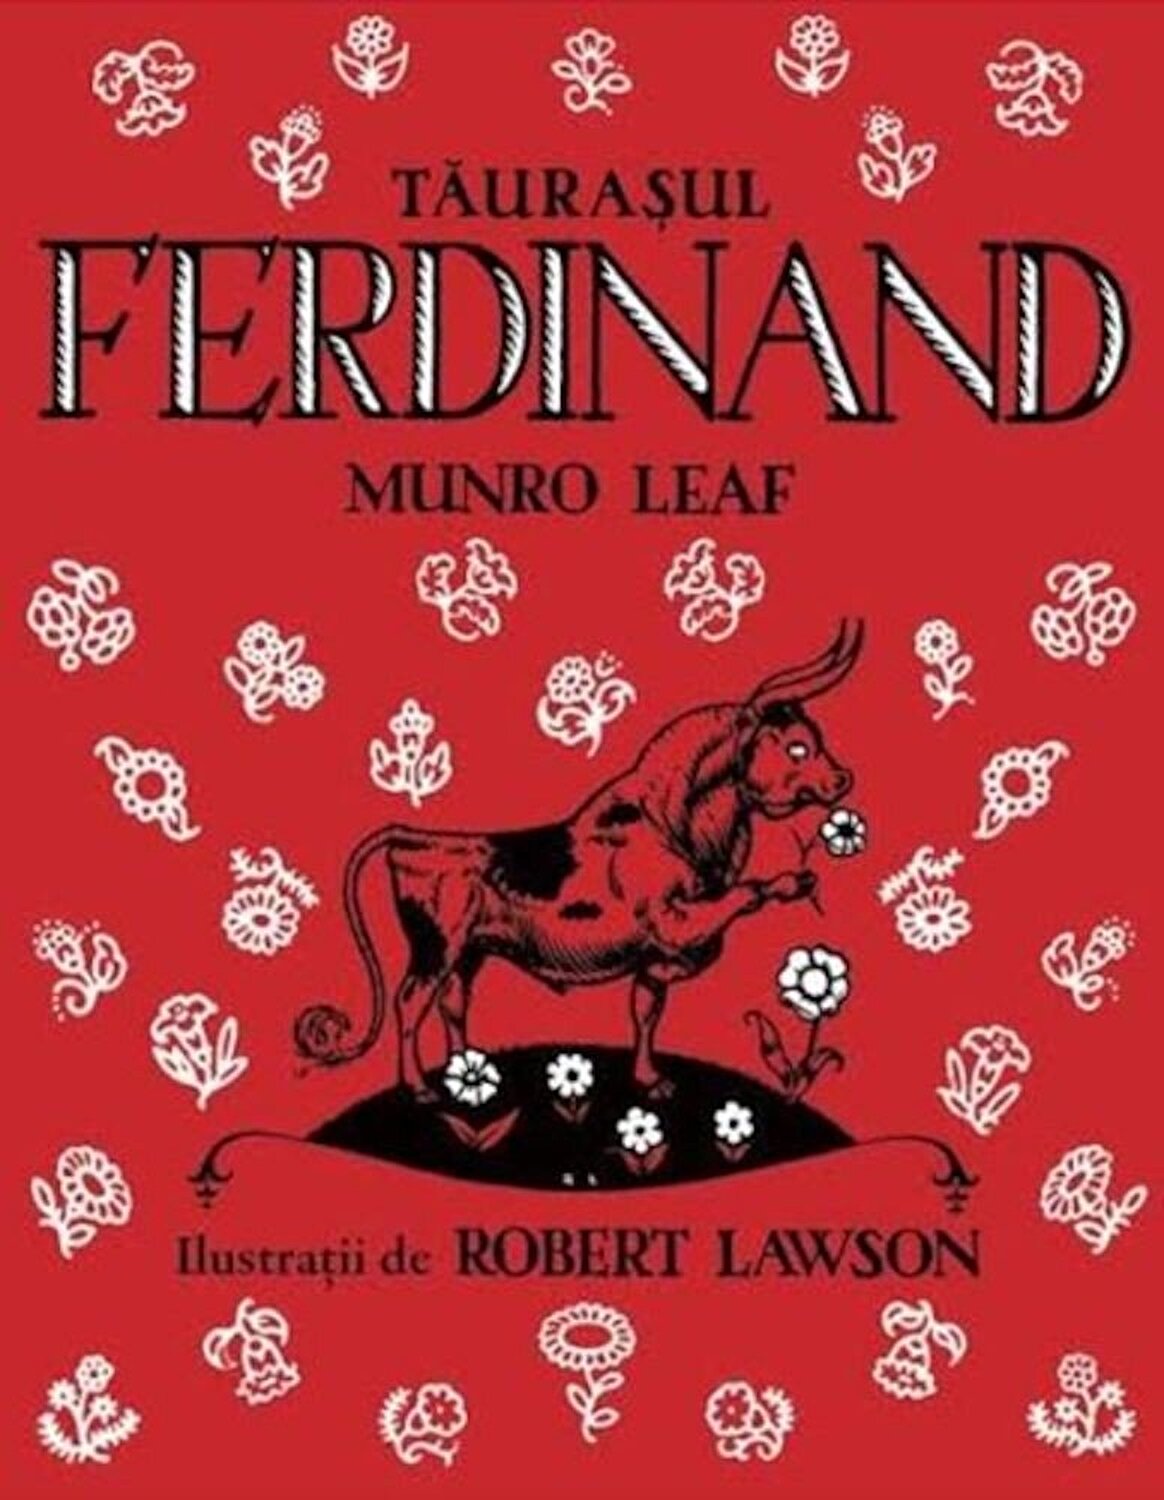 Taurasul Ferdinand | Munro Leaf Arthur 2022